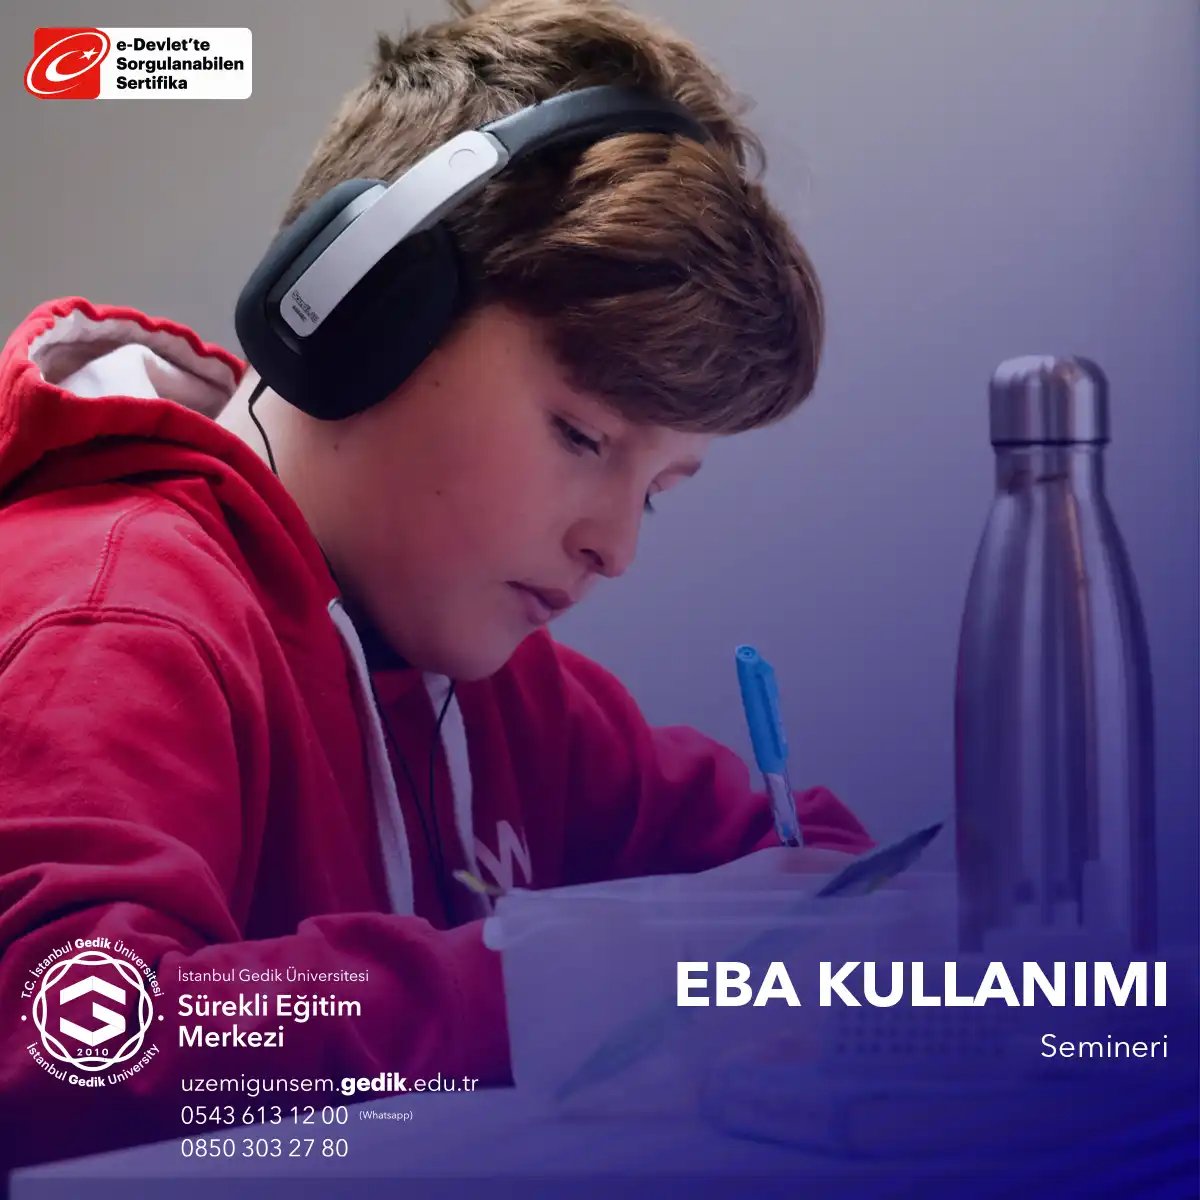 Eba Kullanımı Semineri, eğitimcilerin ve öğrencilerin Türkiye'deki Eğitim Bilişim Ağı'nı (EBA) etkili bir şekilde kullanarak online eğitim, kaynak paylaşımı ve dijital öğrenme deneyimlerini optimize etmelerine yardımcı olmayı amaçlar.